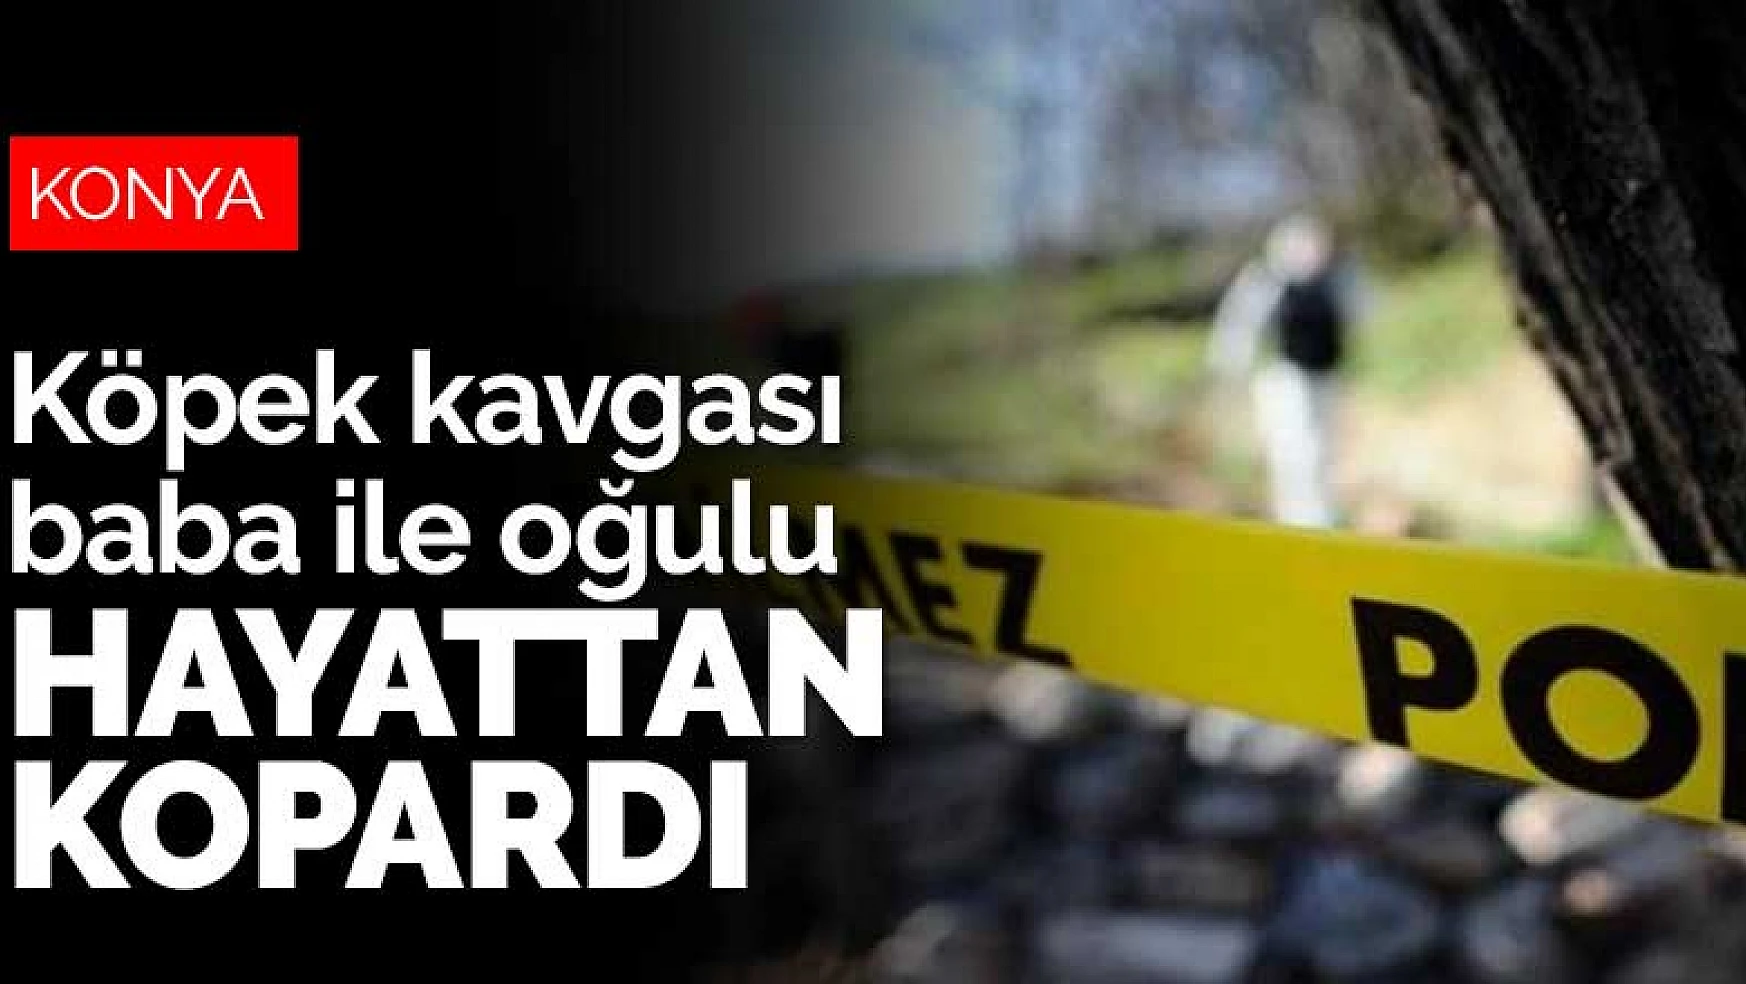 Konya'da köpek meselesi bıçaklı kavgaya döndü! Baba ile oğlu öldü, 2 kişi yaralı